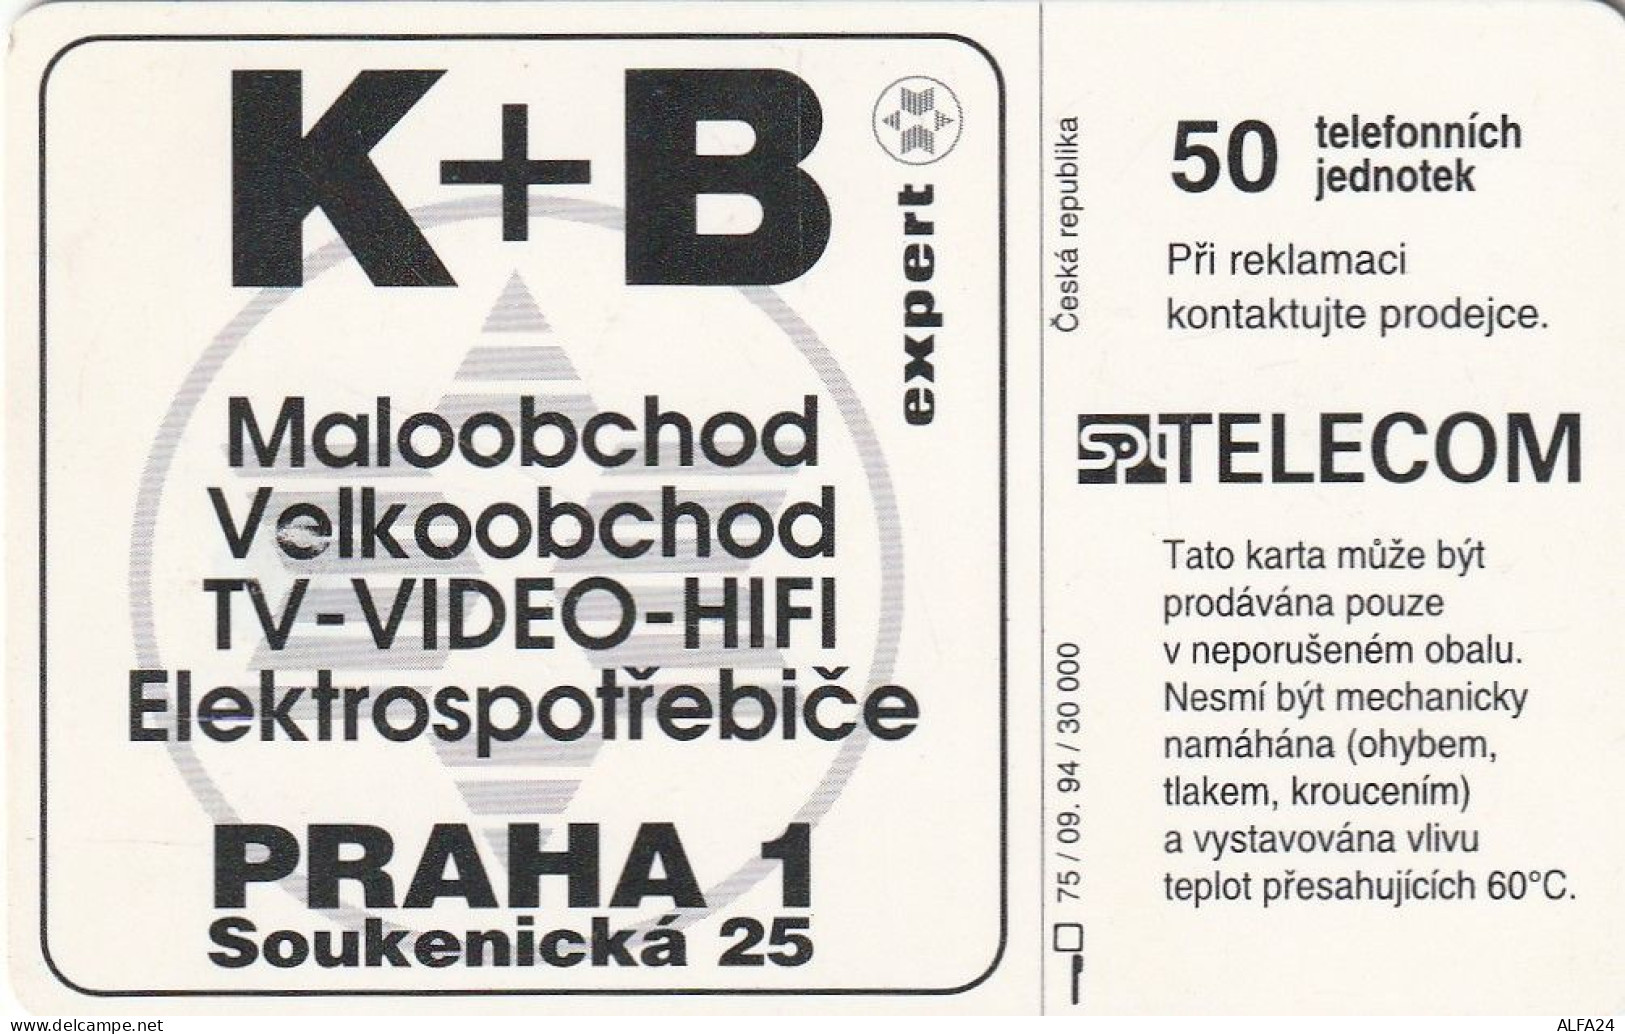 PHONE CARD REP.CECA  (CZ1153 - Repubblica Ceca